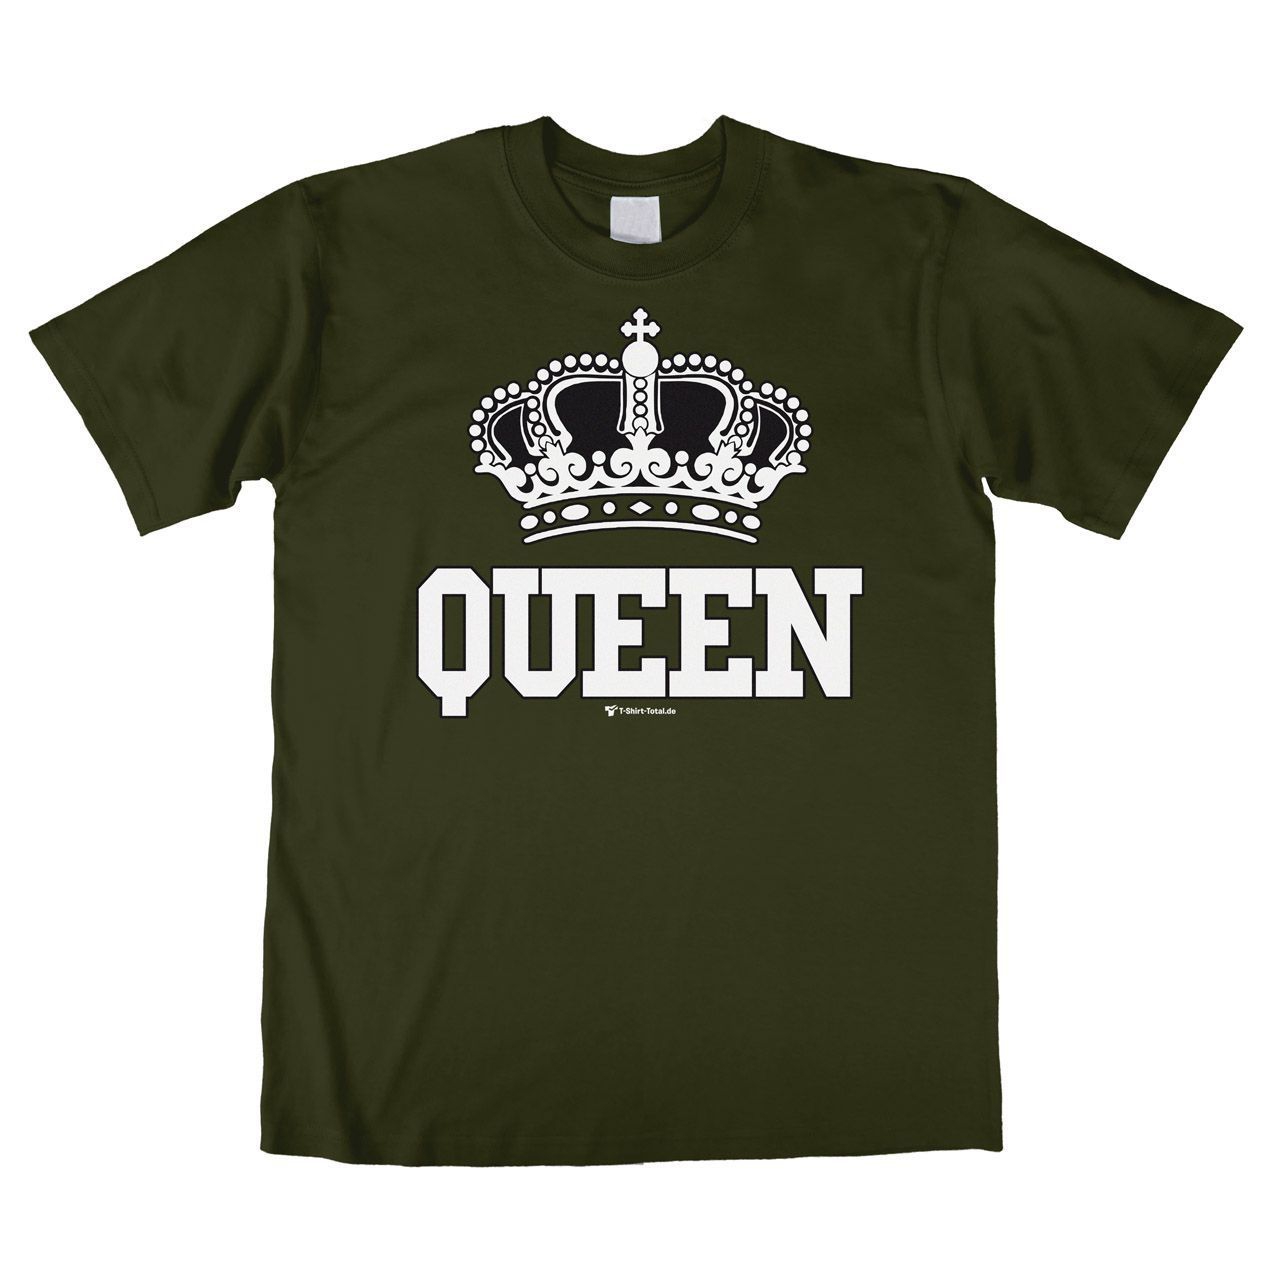 Queen Unisex T-Shirt khaki Medium